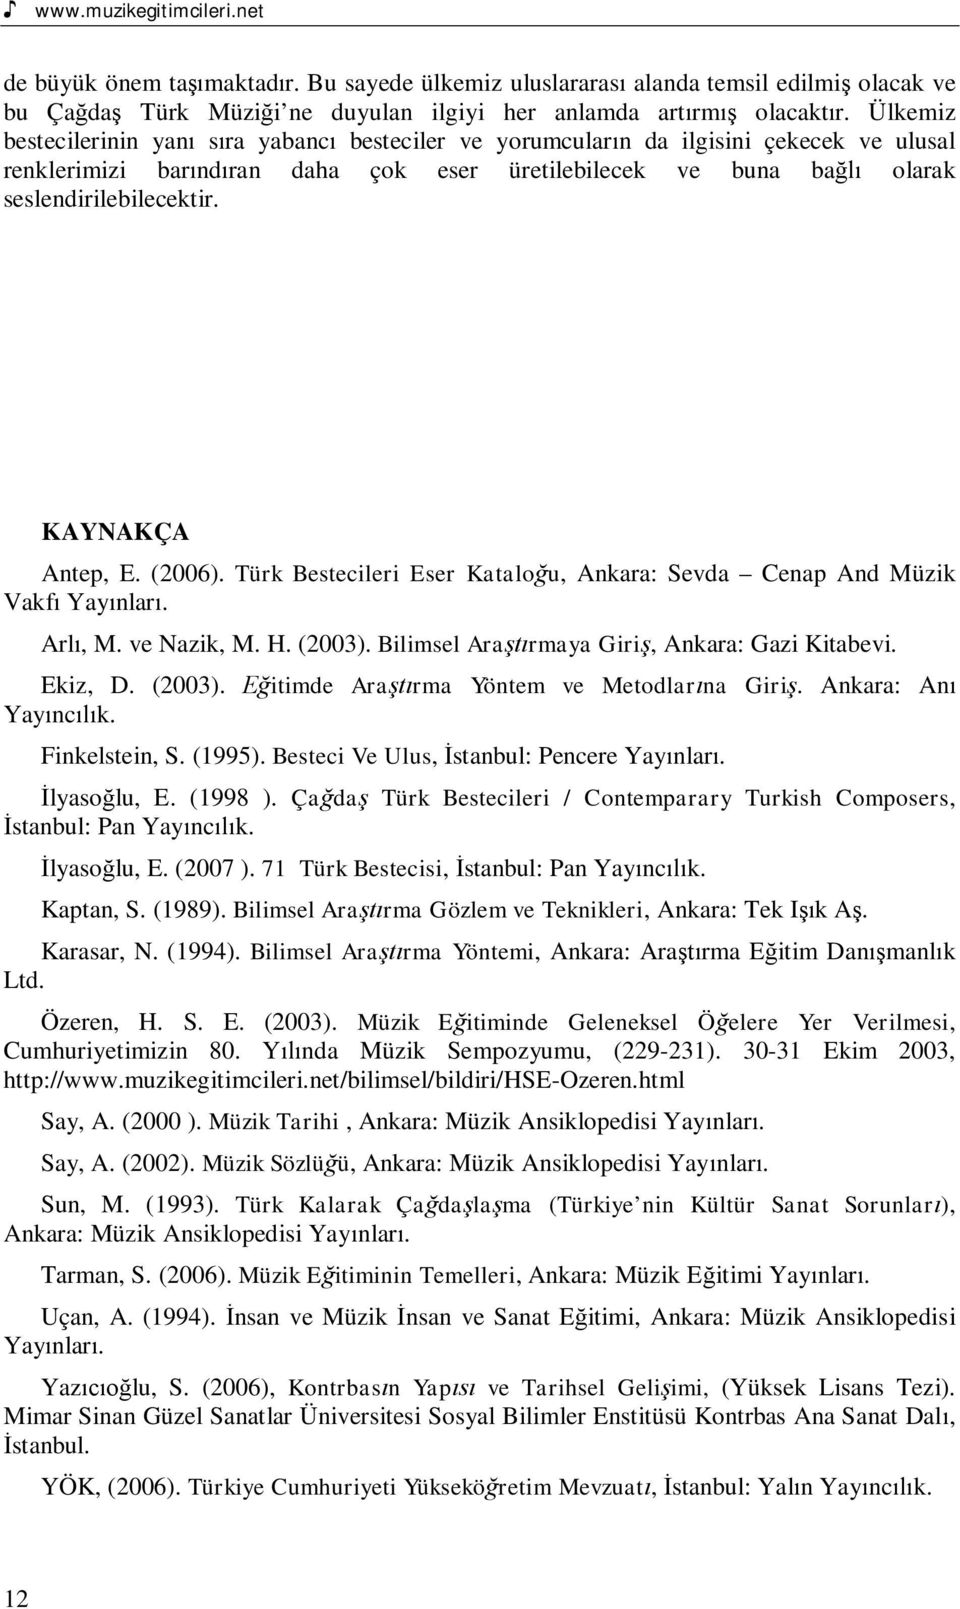 KAYNAKÇA Antep, E. (2006). Türk Bestecileri Eser Katalou, Ankara: Sevda Cenap And Müzik Vakf Yaynlar. Arl, M. ve Nazik, M. H. (2003). Bilimsel Ararmaya Giri, Ankara: Gazi Kitabevi. Ekiz, D. (2003). itimde Ararma Yöntem ve Metodlarna Giri.